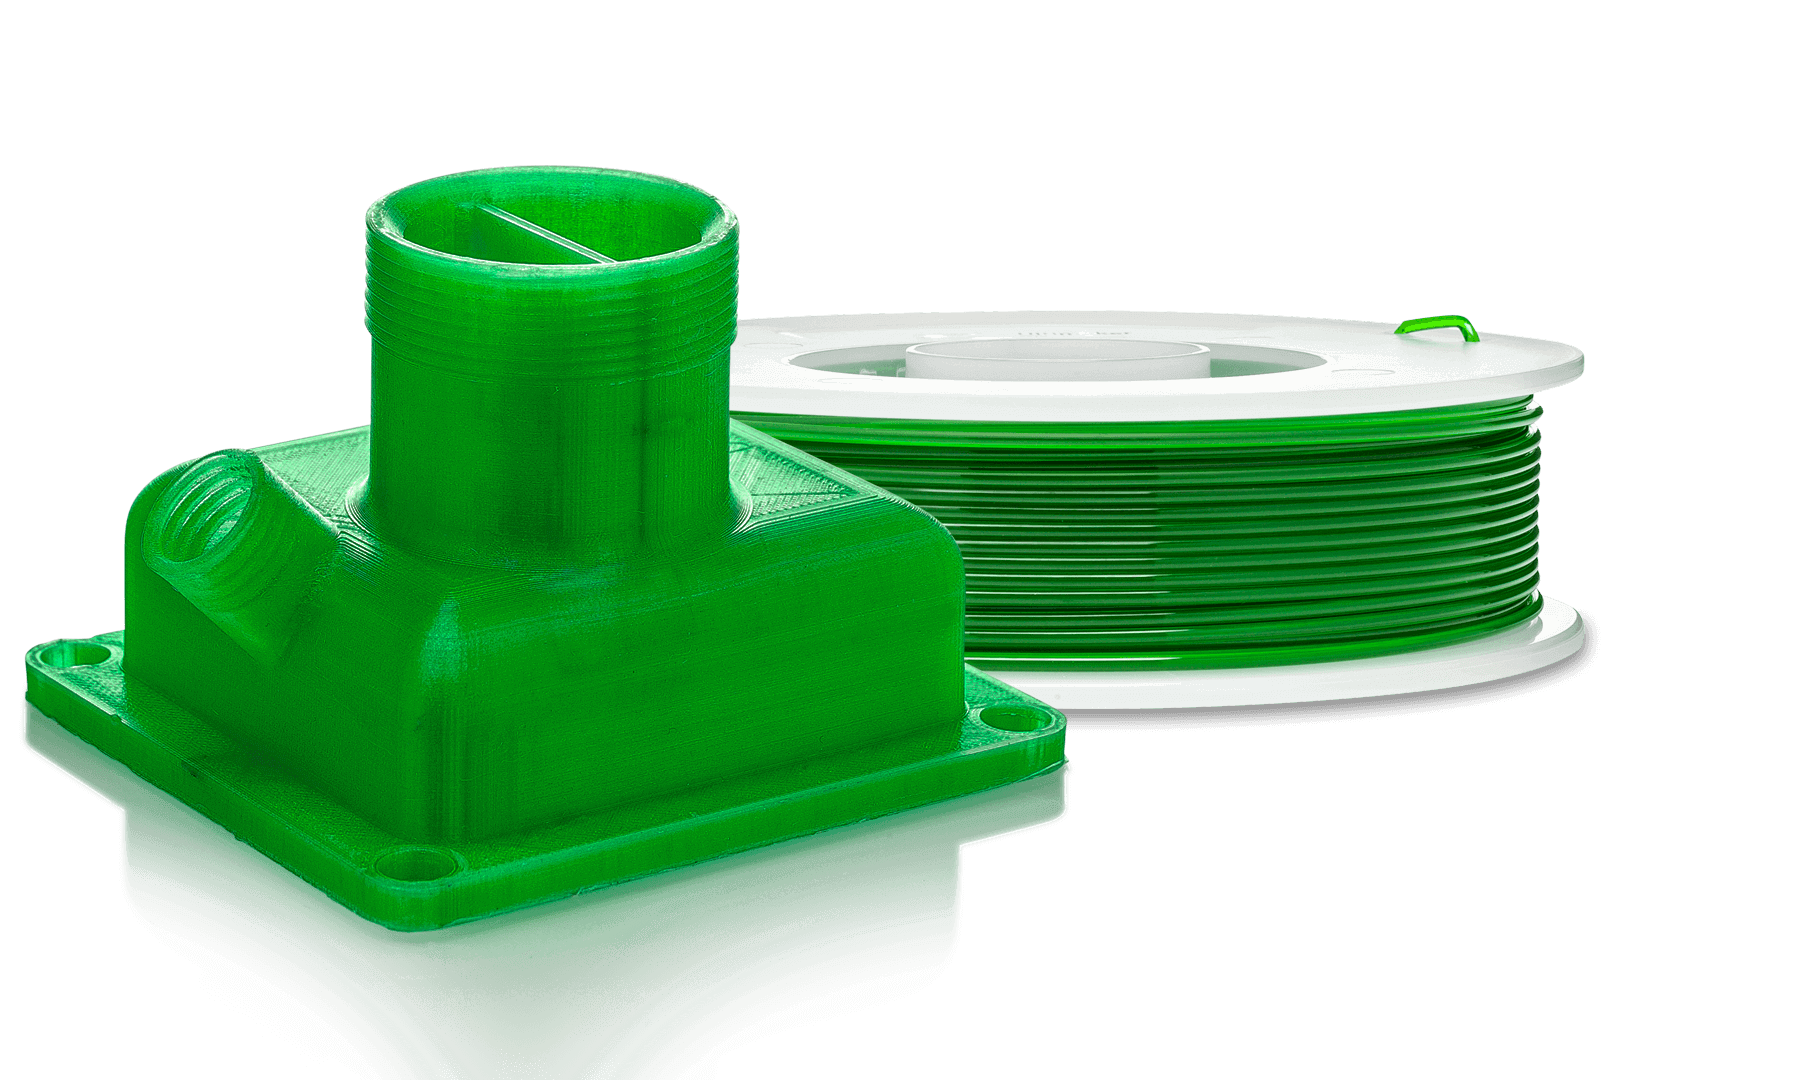 Filamento PETG stampa 3D: le migliori marche - Guida all'acquisto - Guide -  Stampa 3D forum